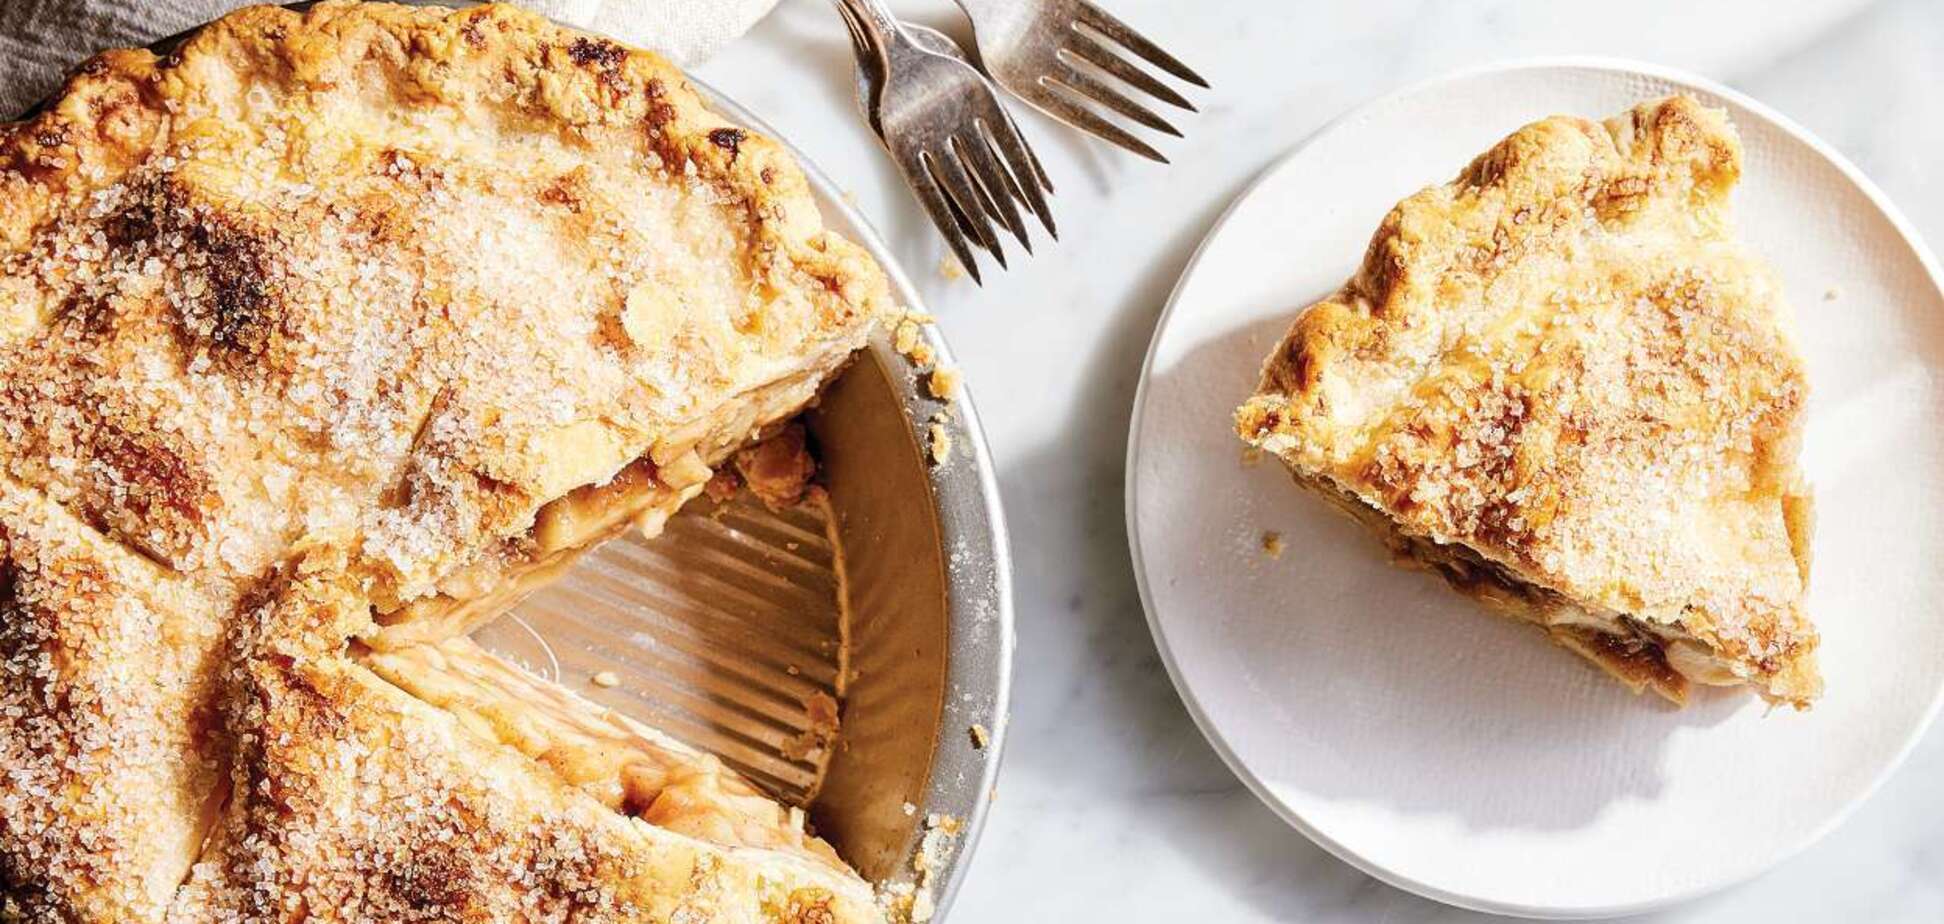 Елементарний яблучний пиріг з лаваша: борошно додавати не потрібно 